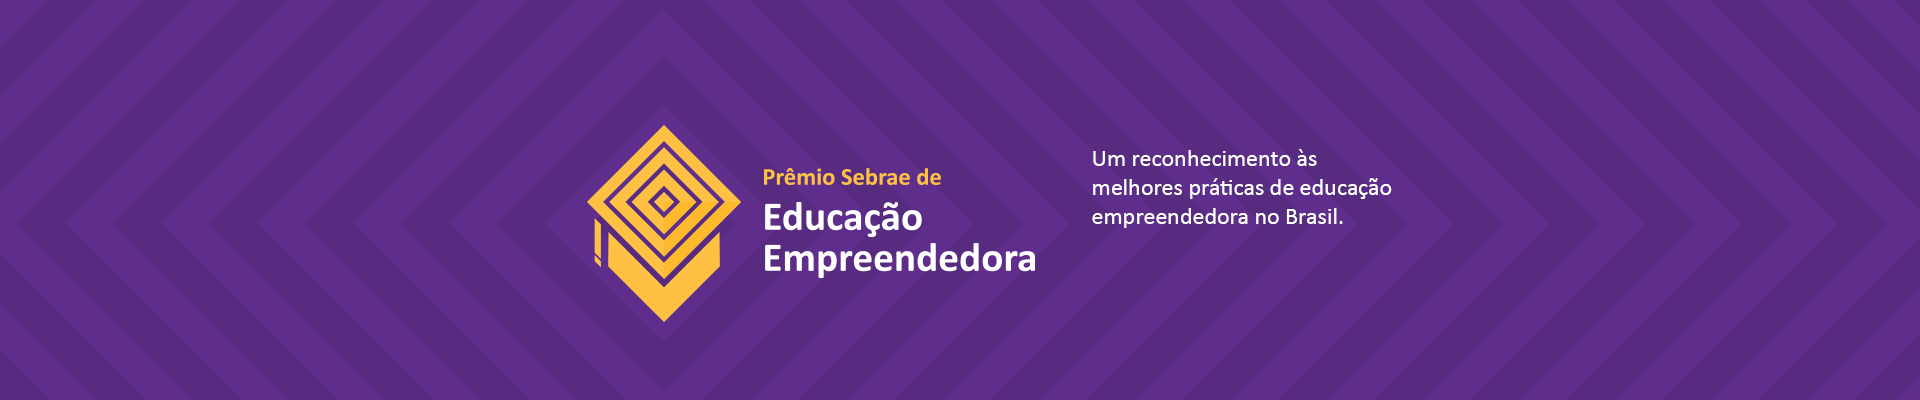 Prêmio Sebrae de Educação Empreendedora: ferramenta de educação e reconhecimento de boas práticas em todo o Brasil